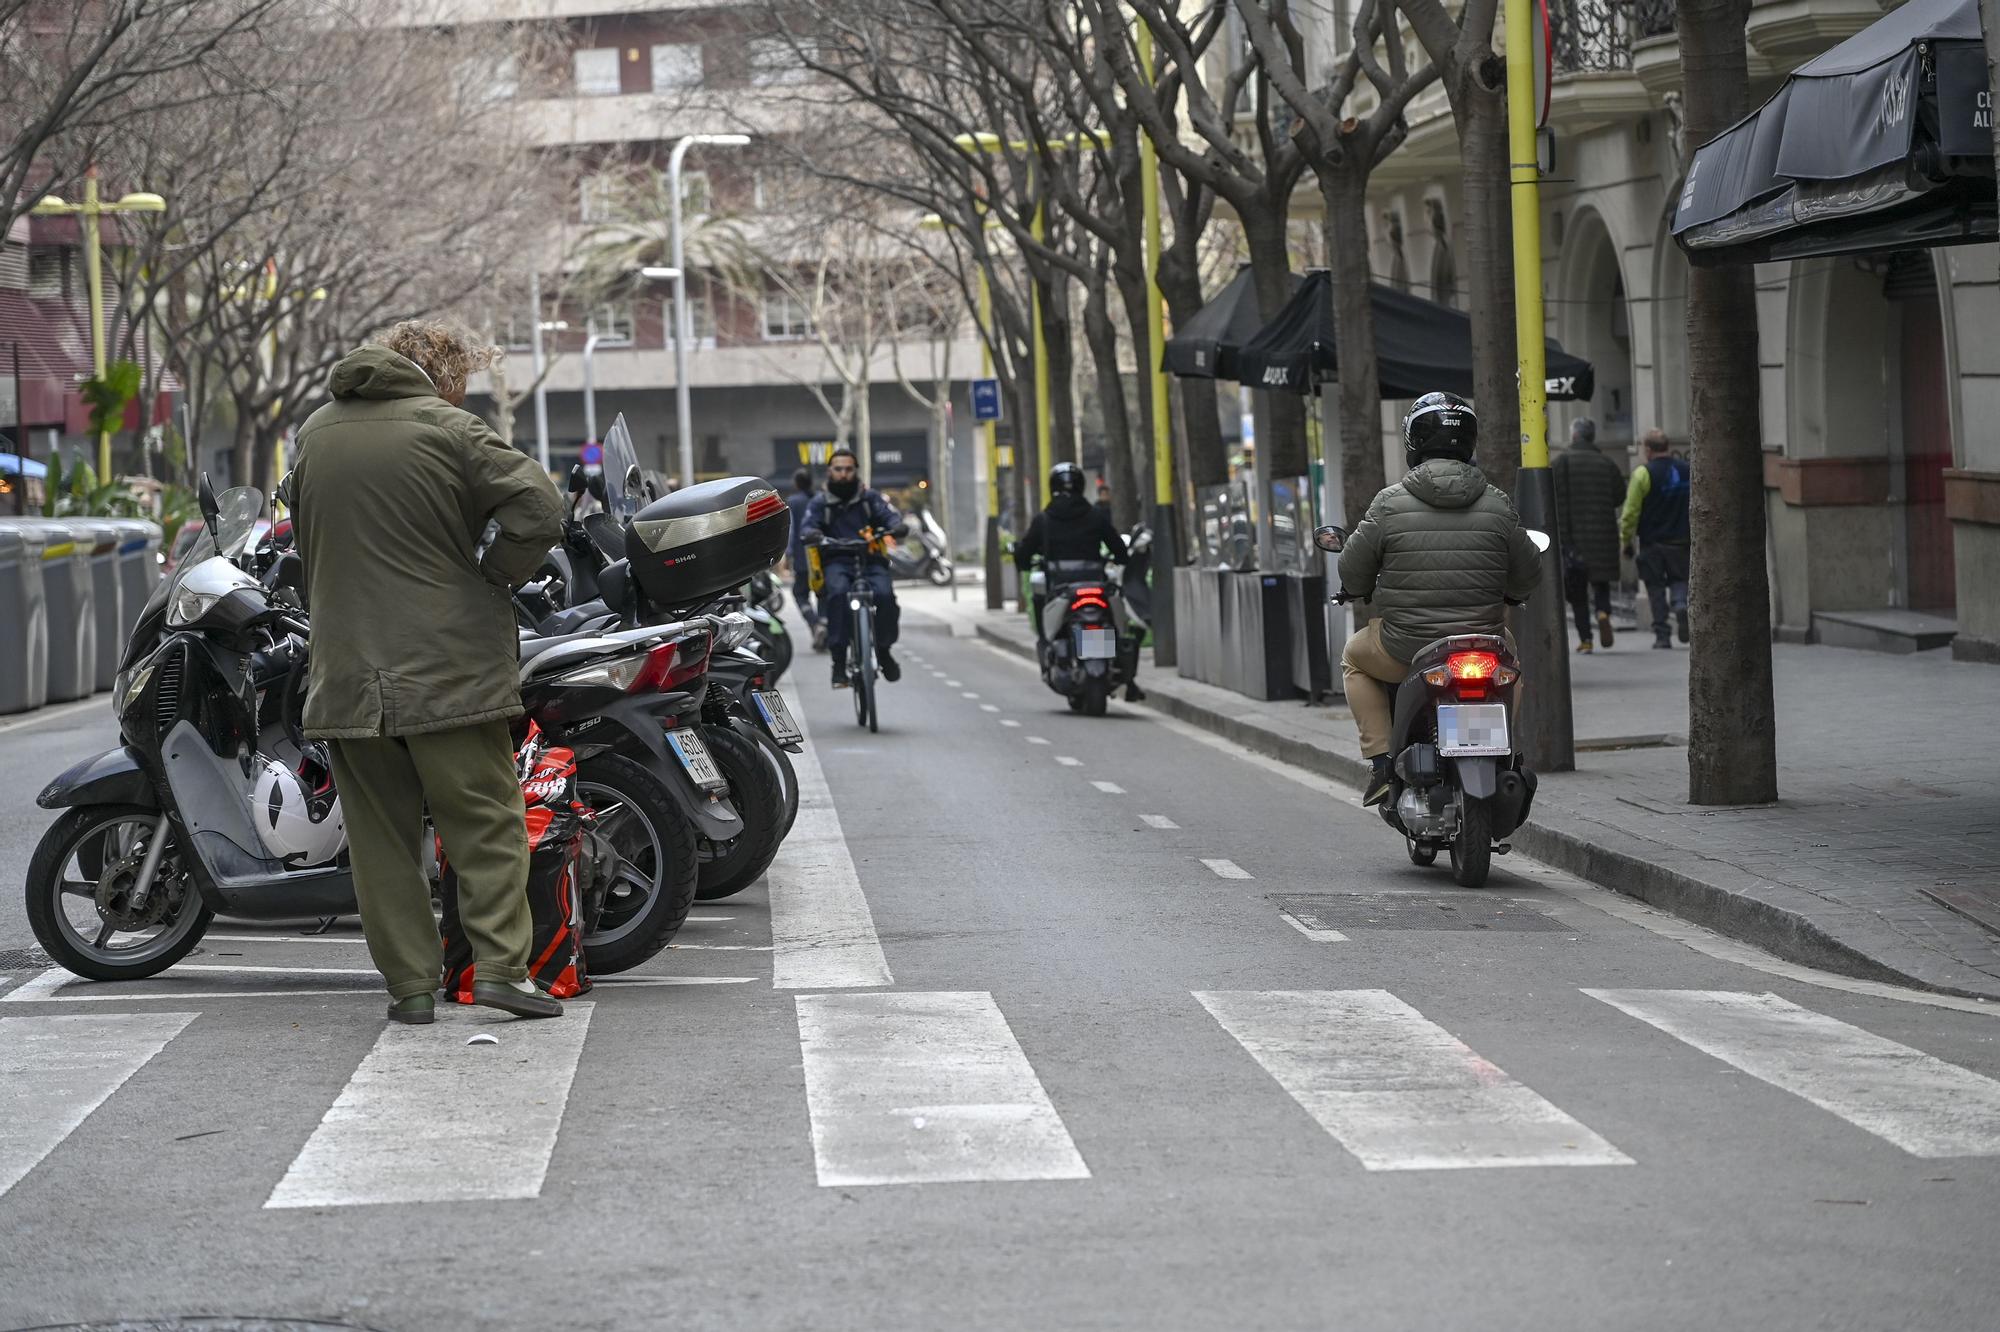 Dos motocicletas utilizando el carril bici para descender por la calle Tuset